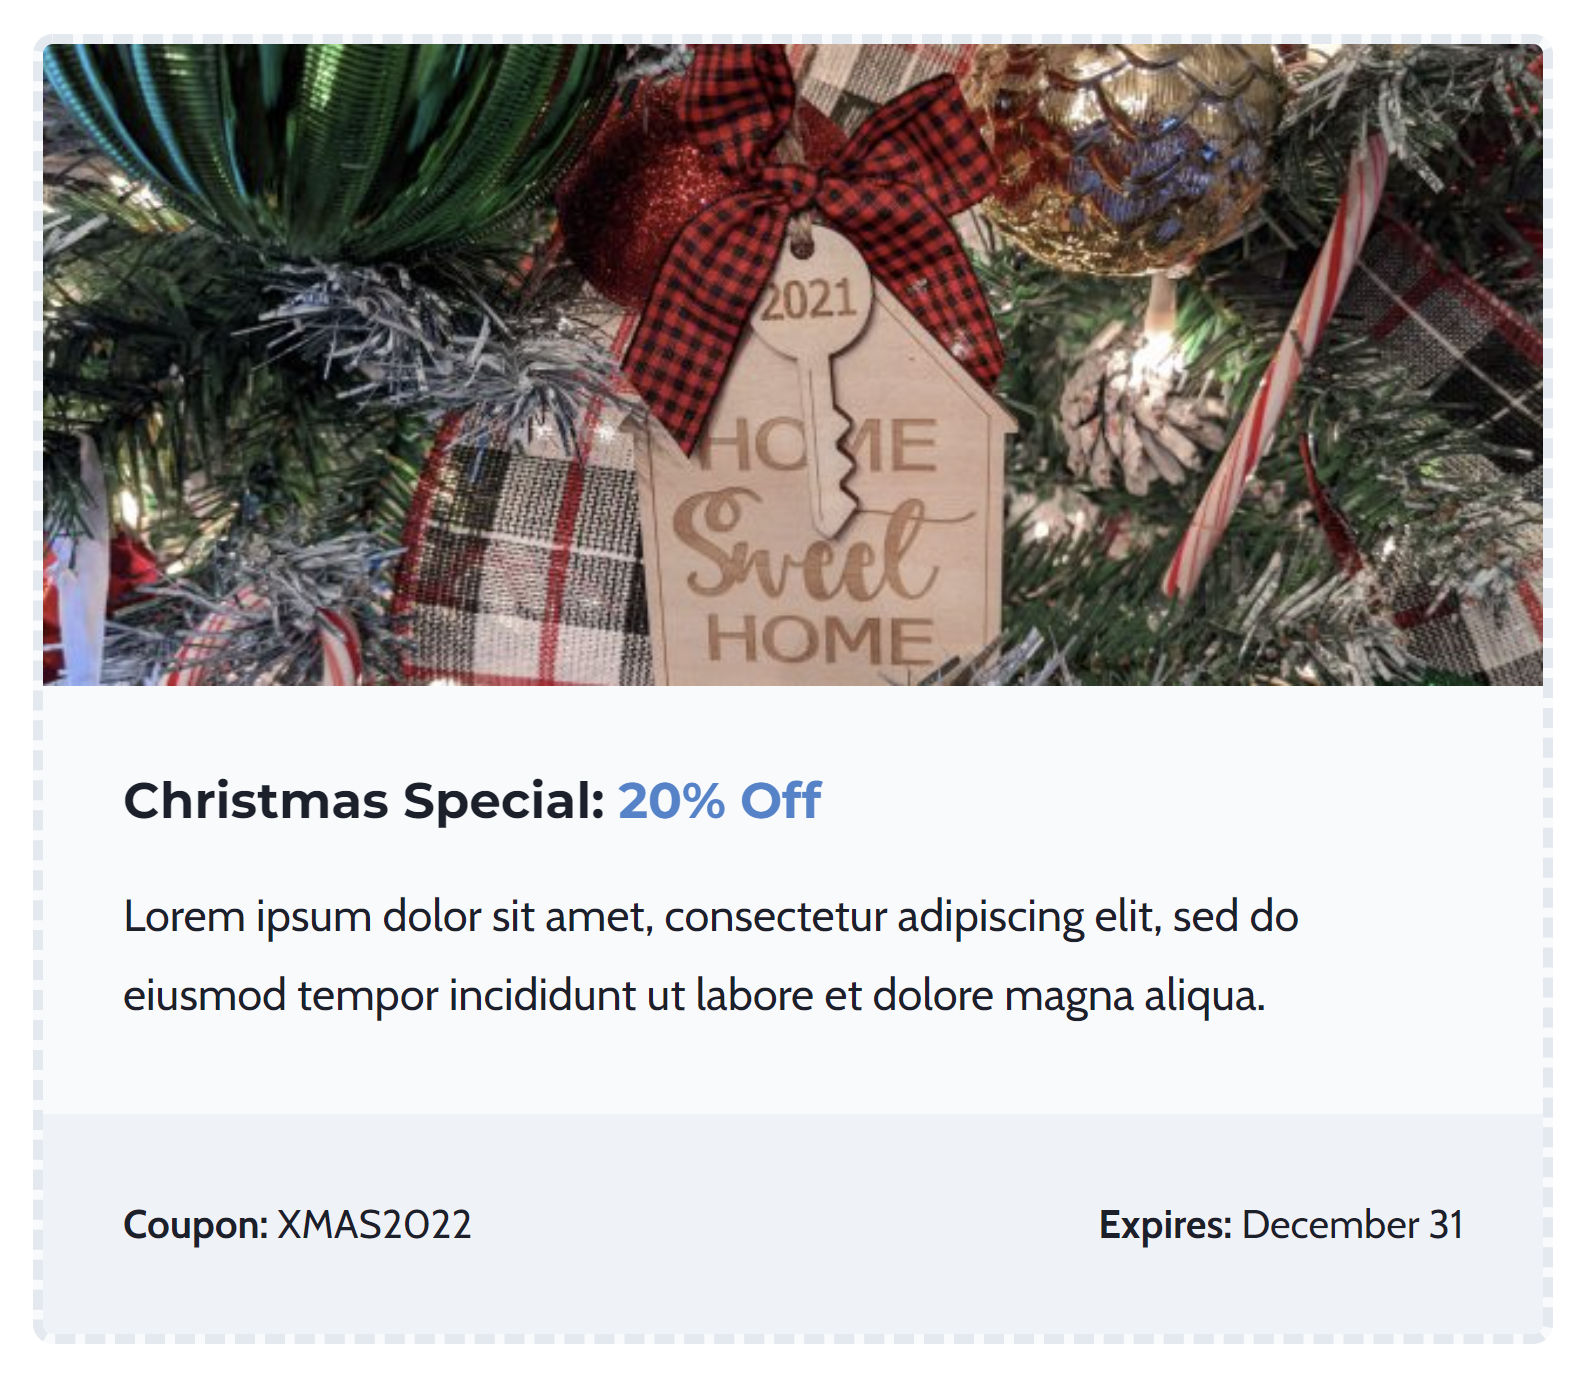 Código de cupom com tema de Natal com uma árvore e enfeite na foto.  Abaixo, está uma lista da venda e um código.